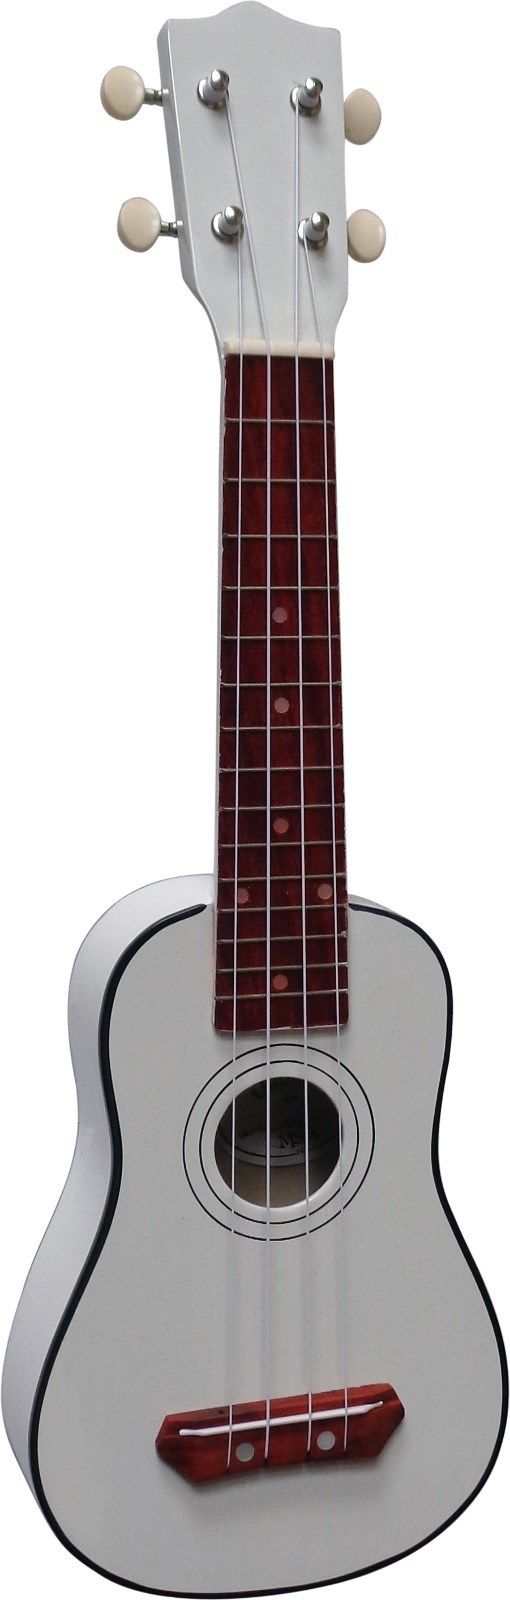 Sopránové ukulele MSA-UK5 bílé